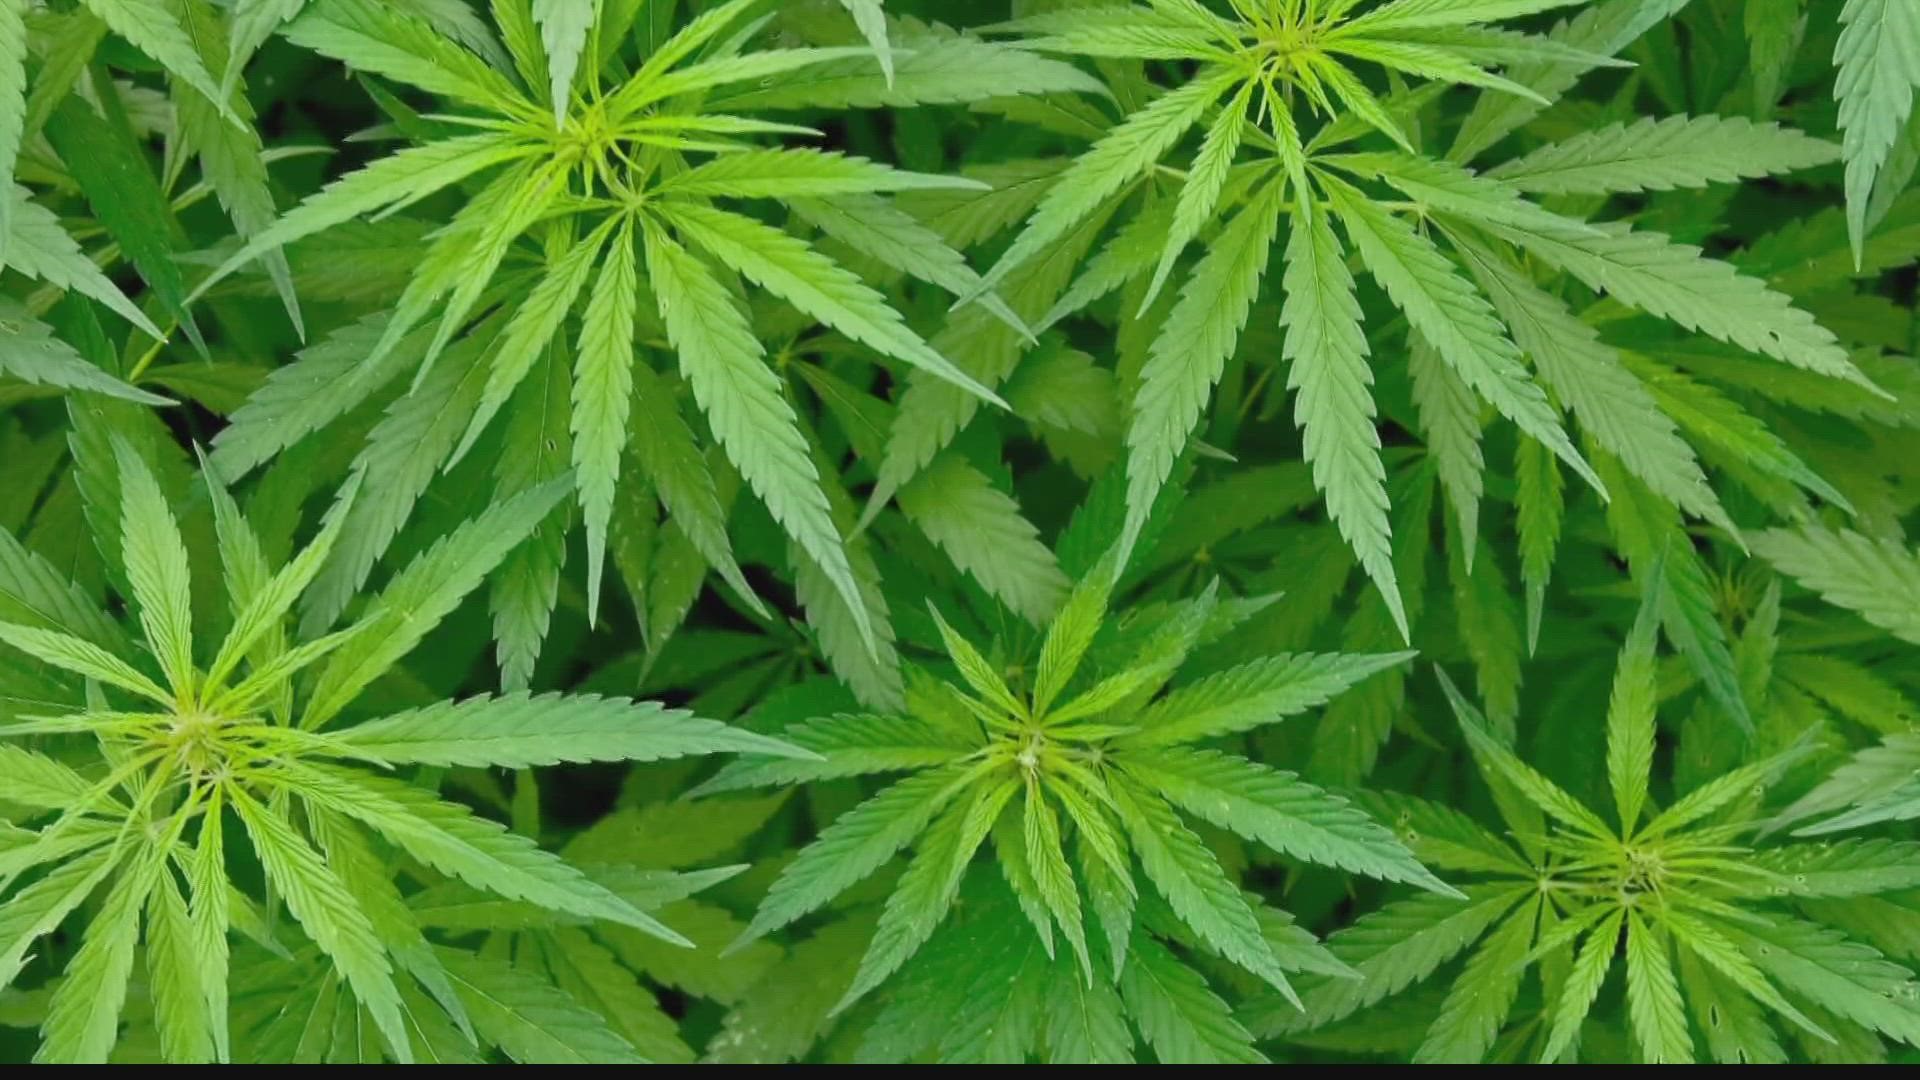 Democrats pushing to legalize marijuana in Indiana 